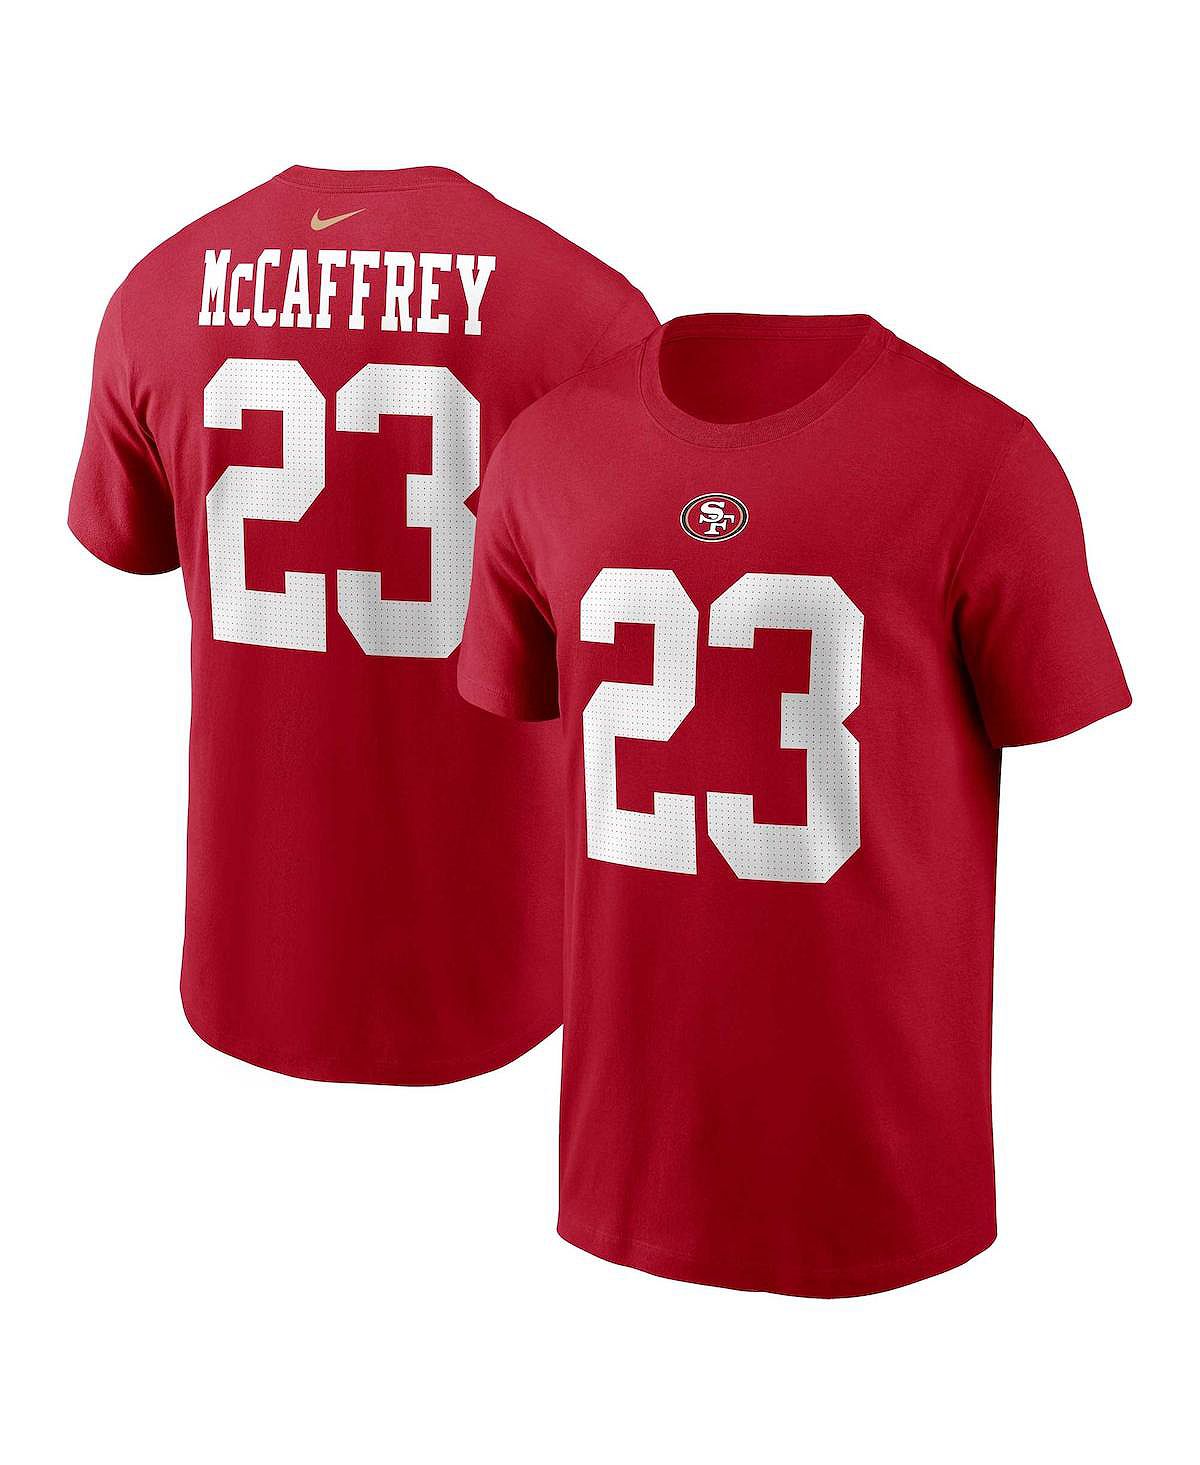 Мужская футболка Christian McCaffrey Scarlet San Francisco 49ers с именем и номером игрока Nike